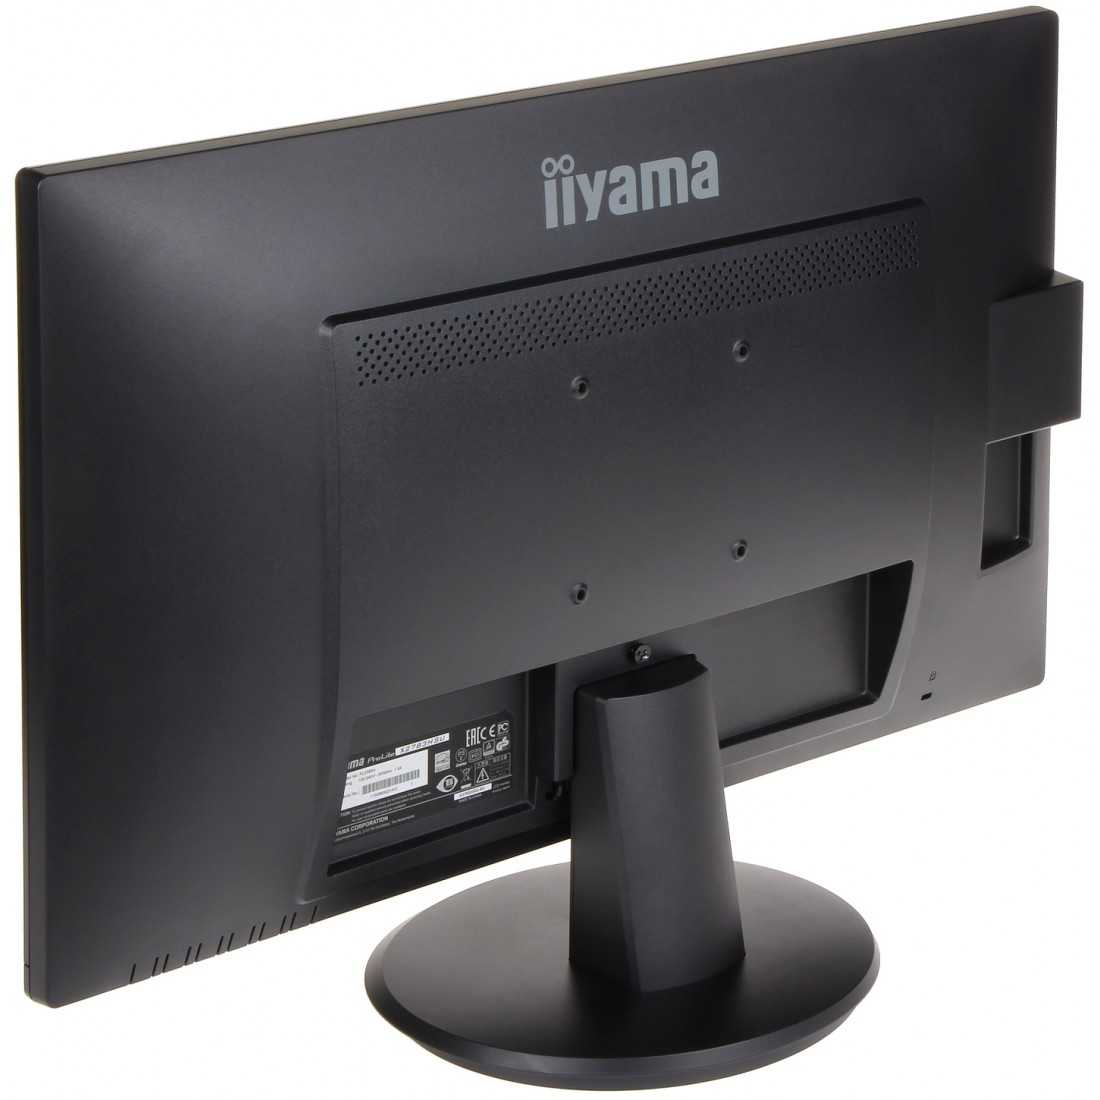 Жк монитор 22" iiyama prolite e2280wsd-b1 — купить, цена и характеристики, отзывы